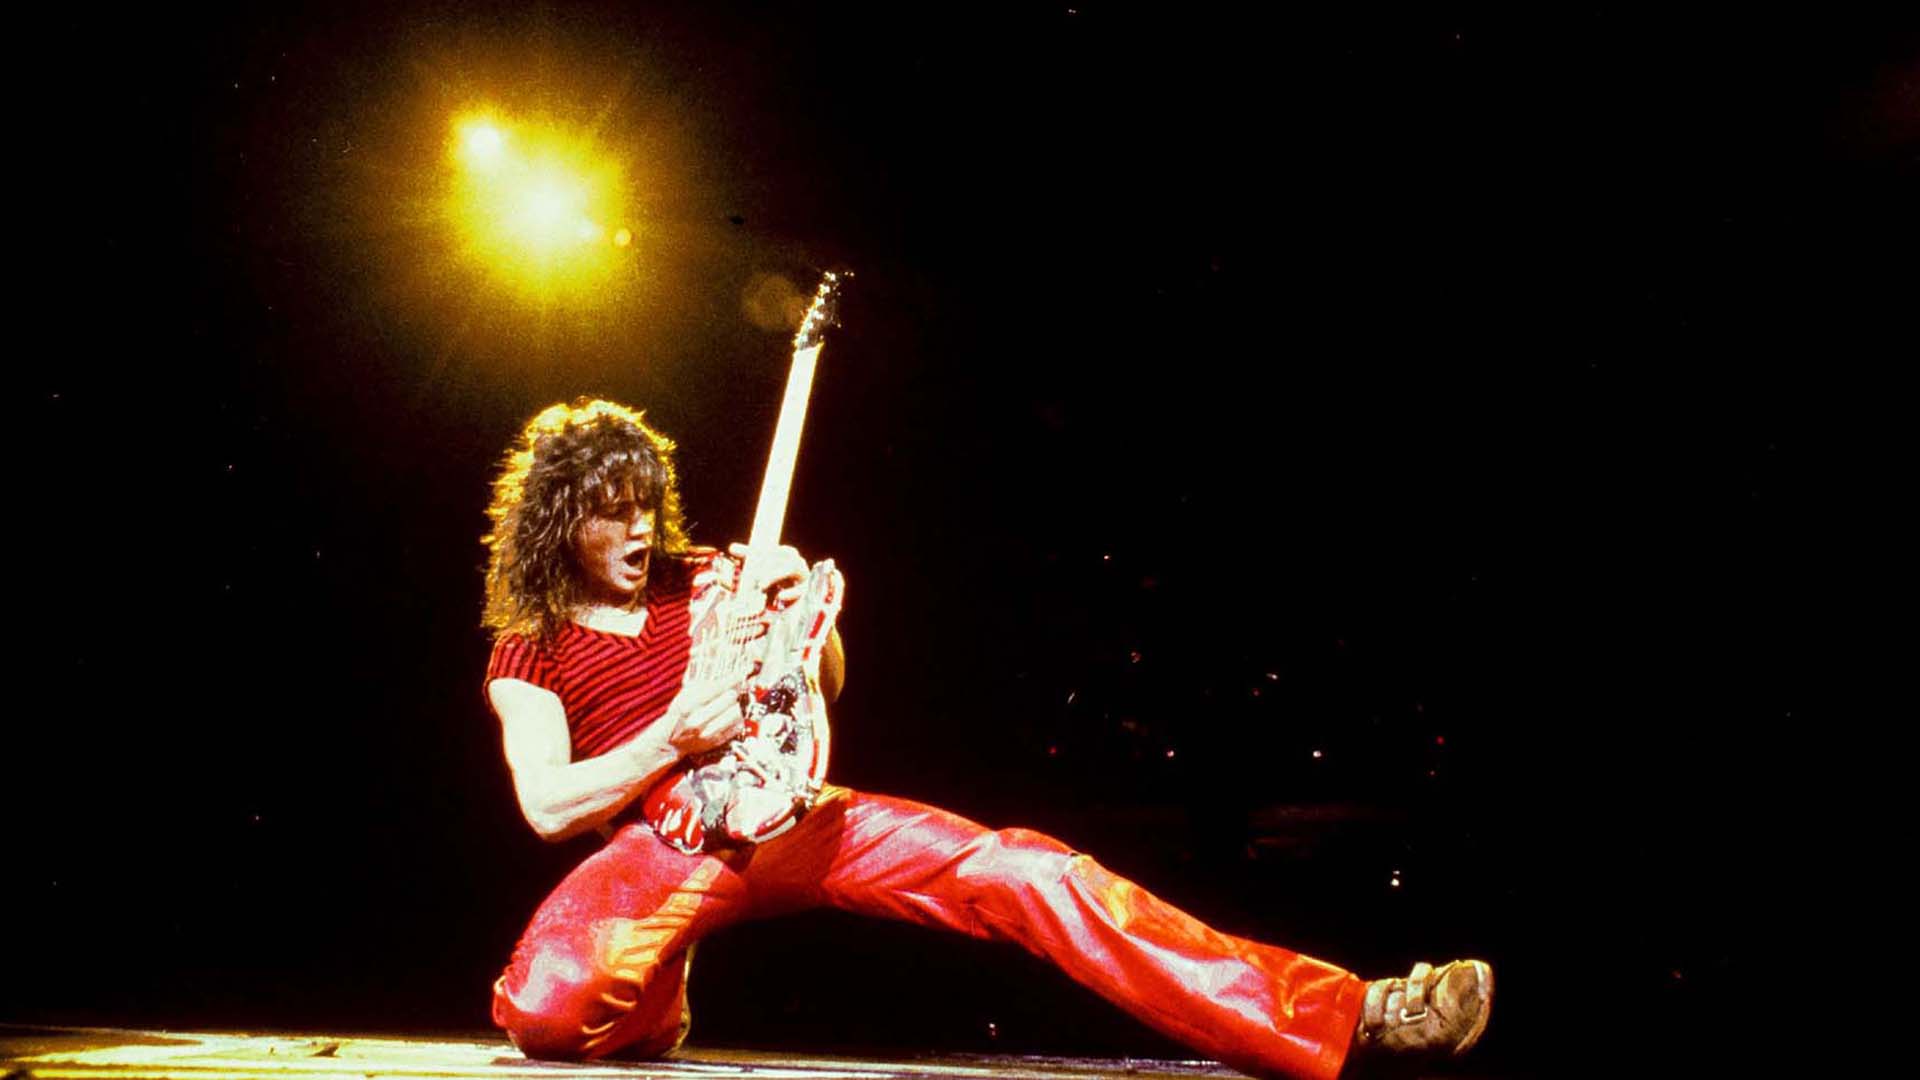 El conmovedor homenaje de la ex esposa de Eddie Van Halen - Infobae